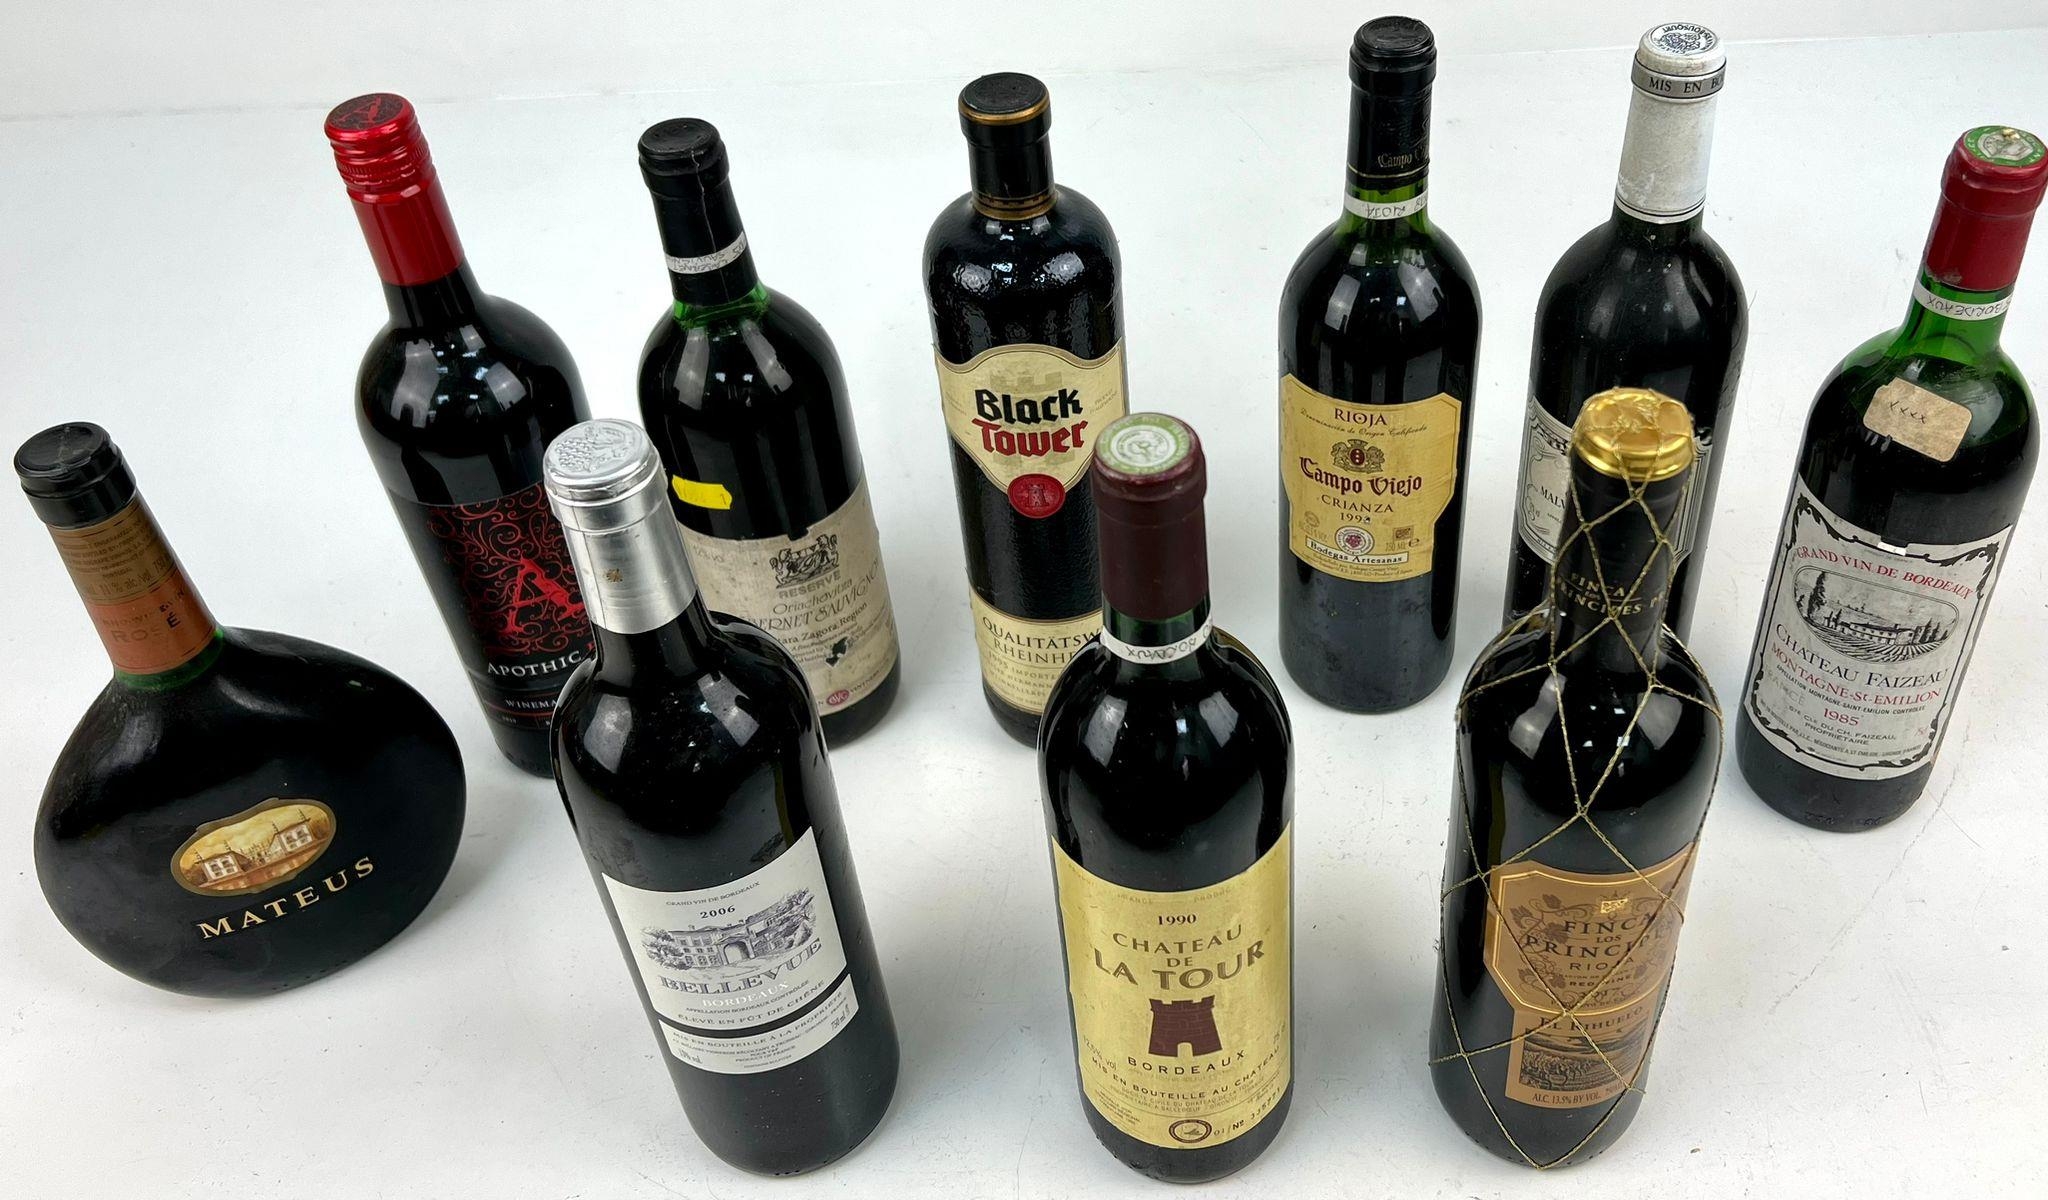 Ten Bottles of Red Wine Including: 1990 Chateau de la Tour, 2006 Chateau Belleview Bordeaux and a - Image 2 of 4